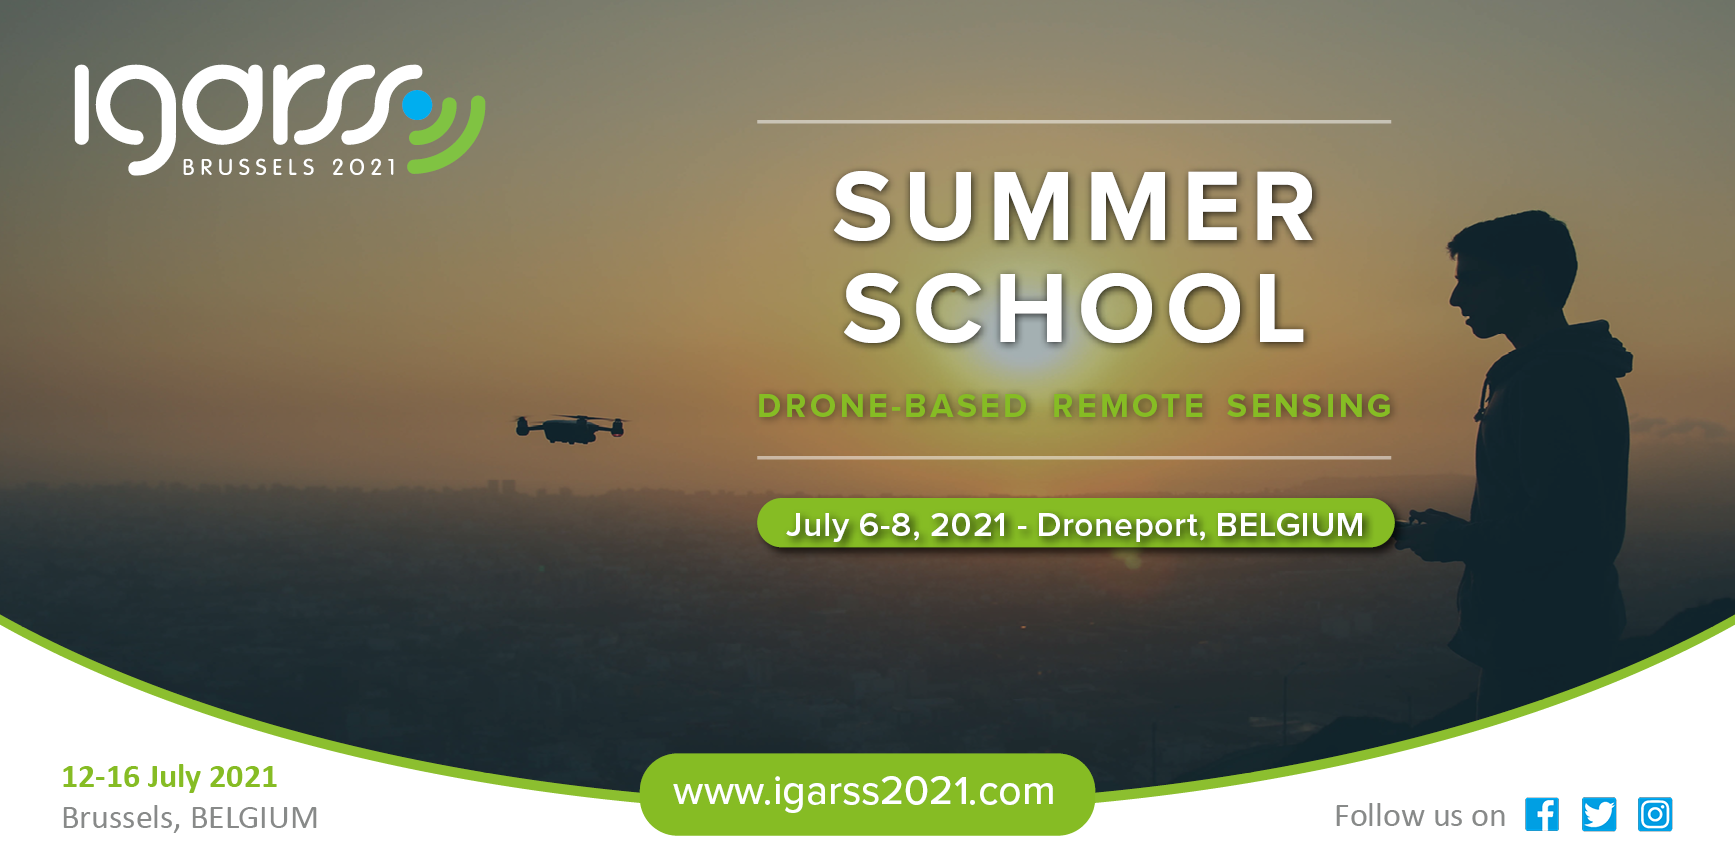 IGARSS21 Summer School Registration